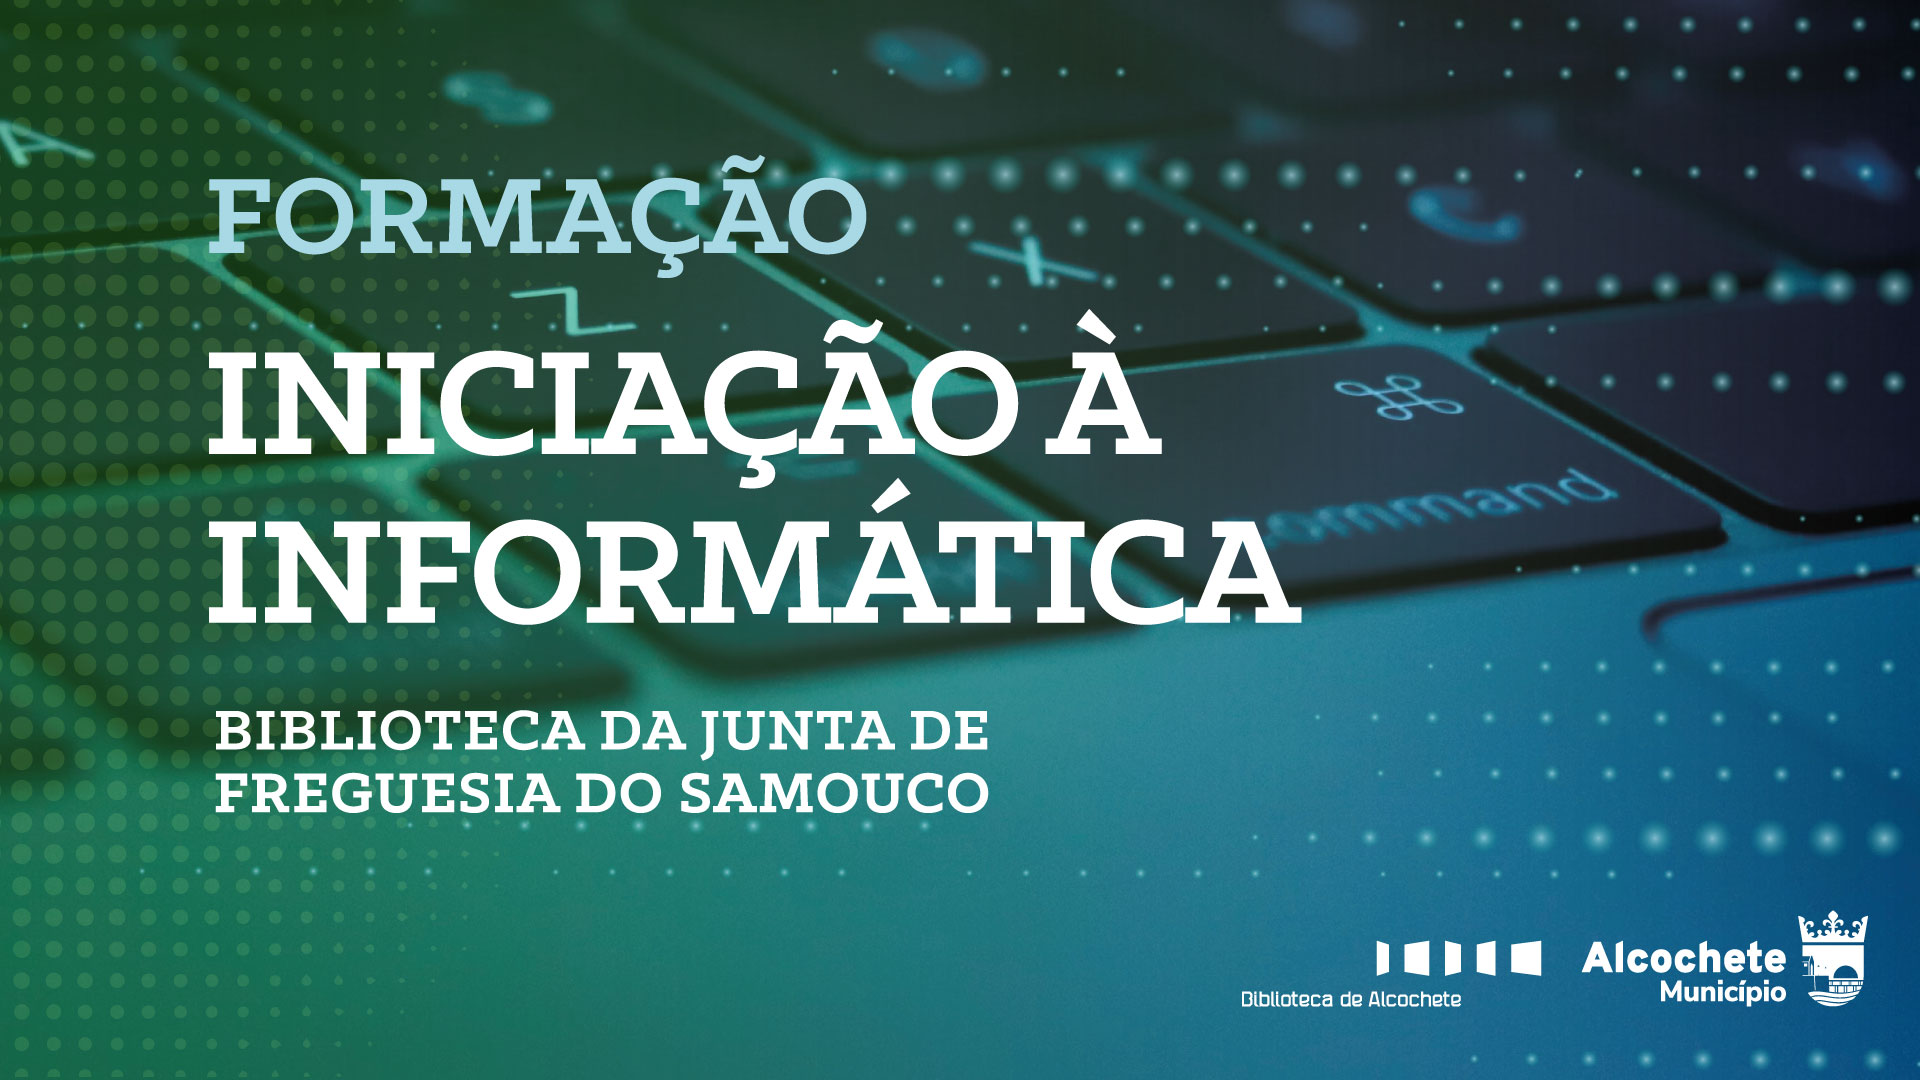 Formação Iniciação à Informática - Samouco